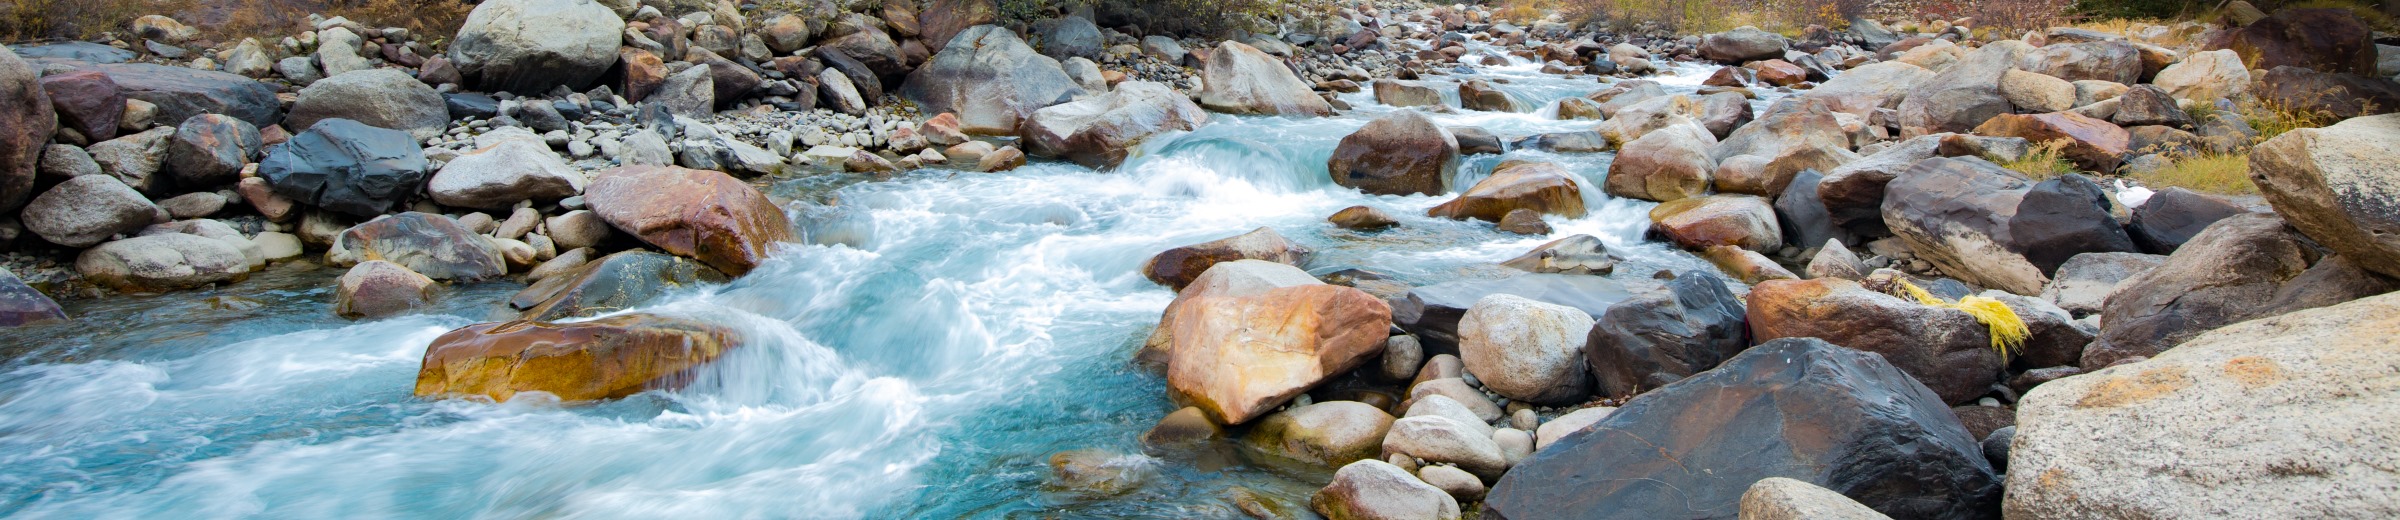 Curso de agua de un río pasando entre piedras